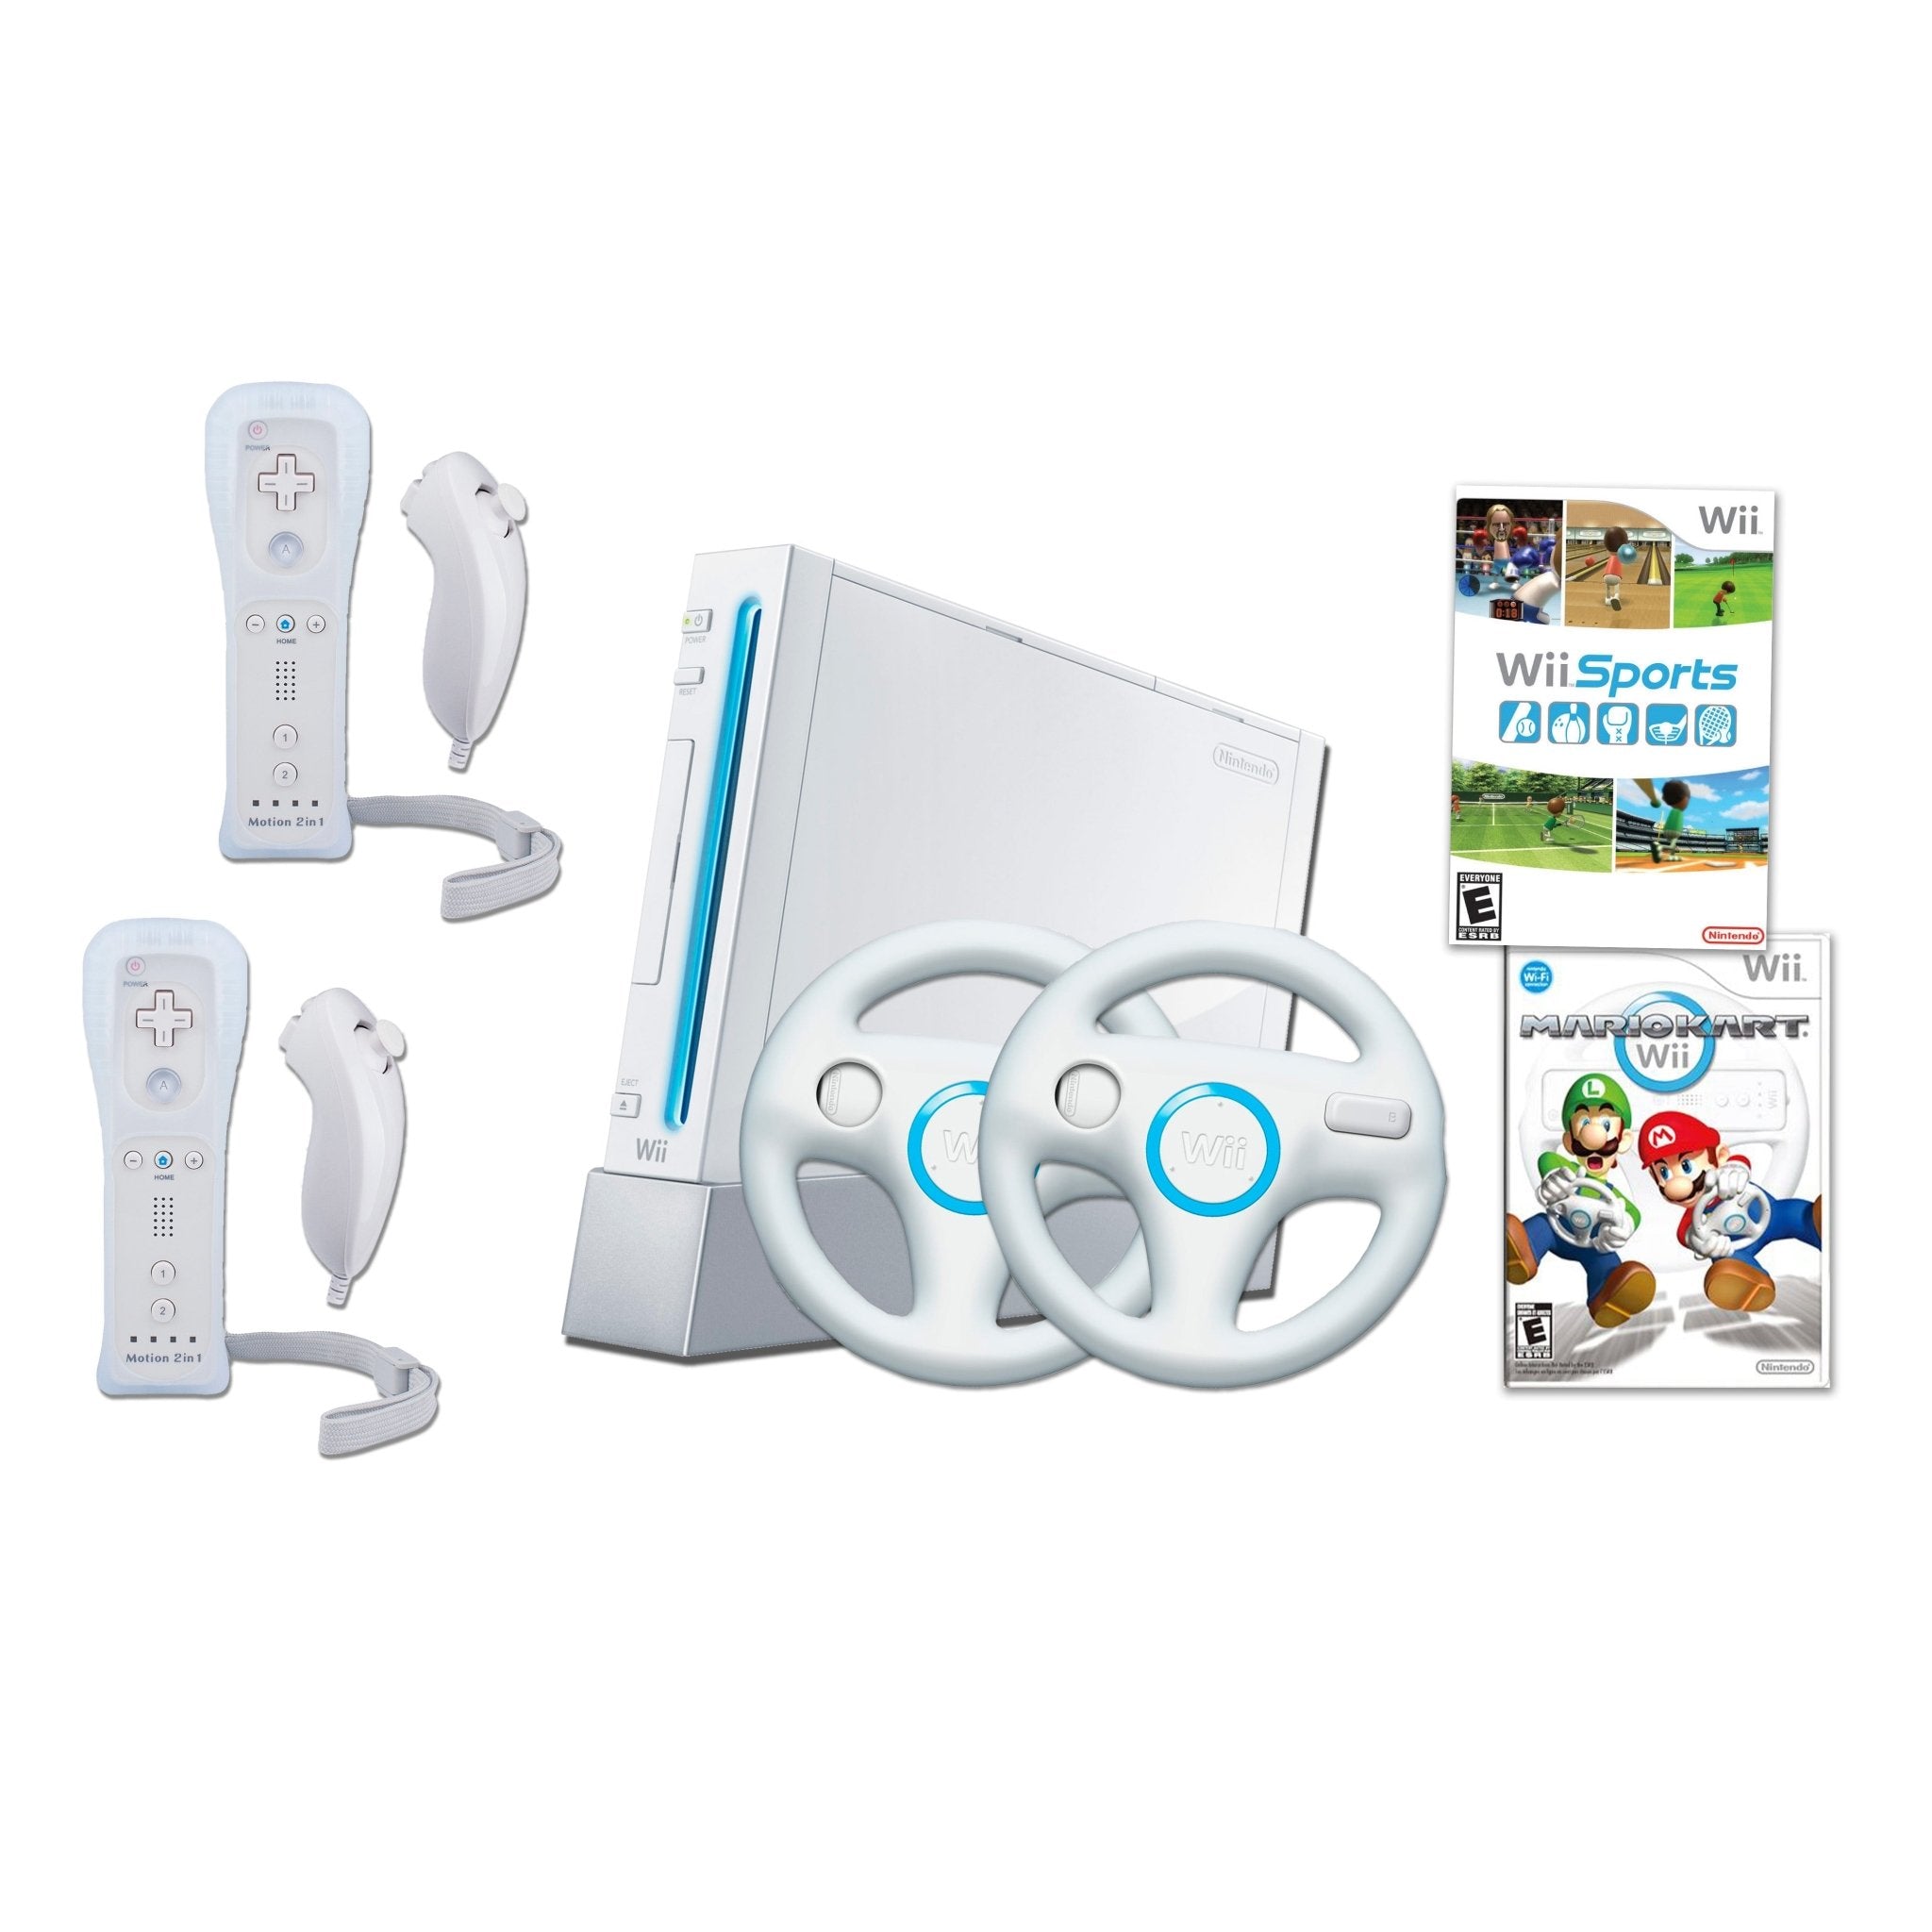 Buy Nintendo Wii Nintendo Wii White Remote plus Wii MotionPlus